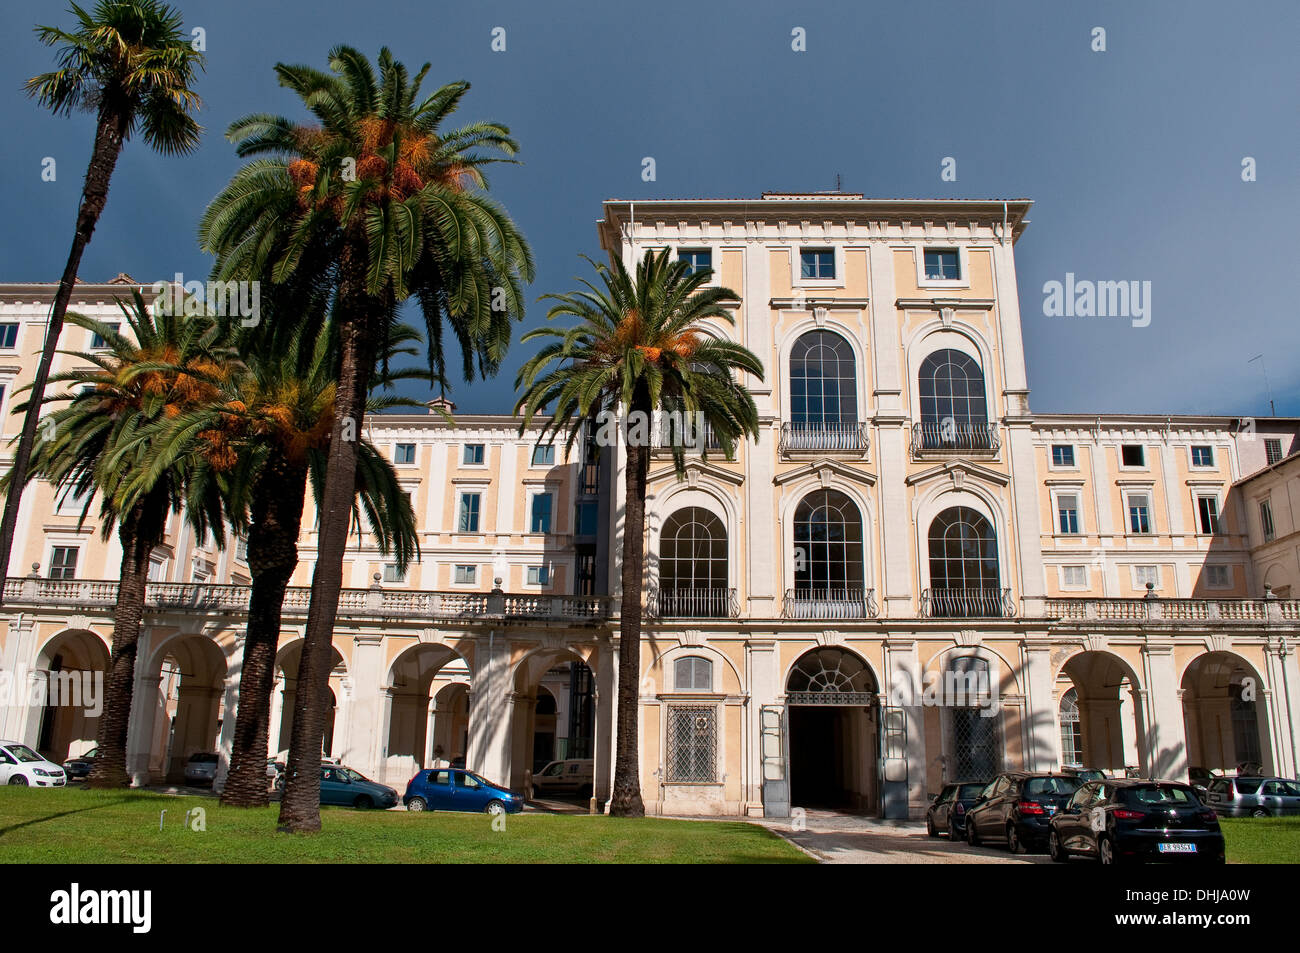 Palazzo Corsini - Galleria Nazionale d'Arte Antica, Trastevere, Rome, Italy Stock Photo